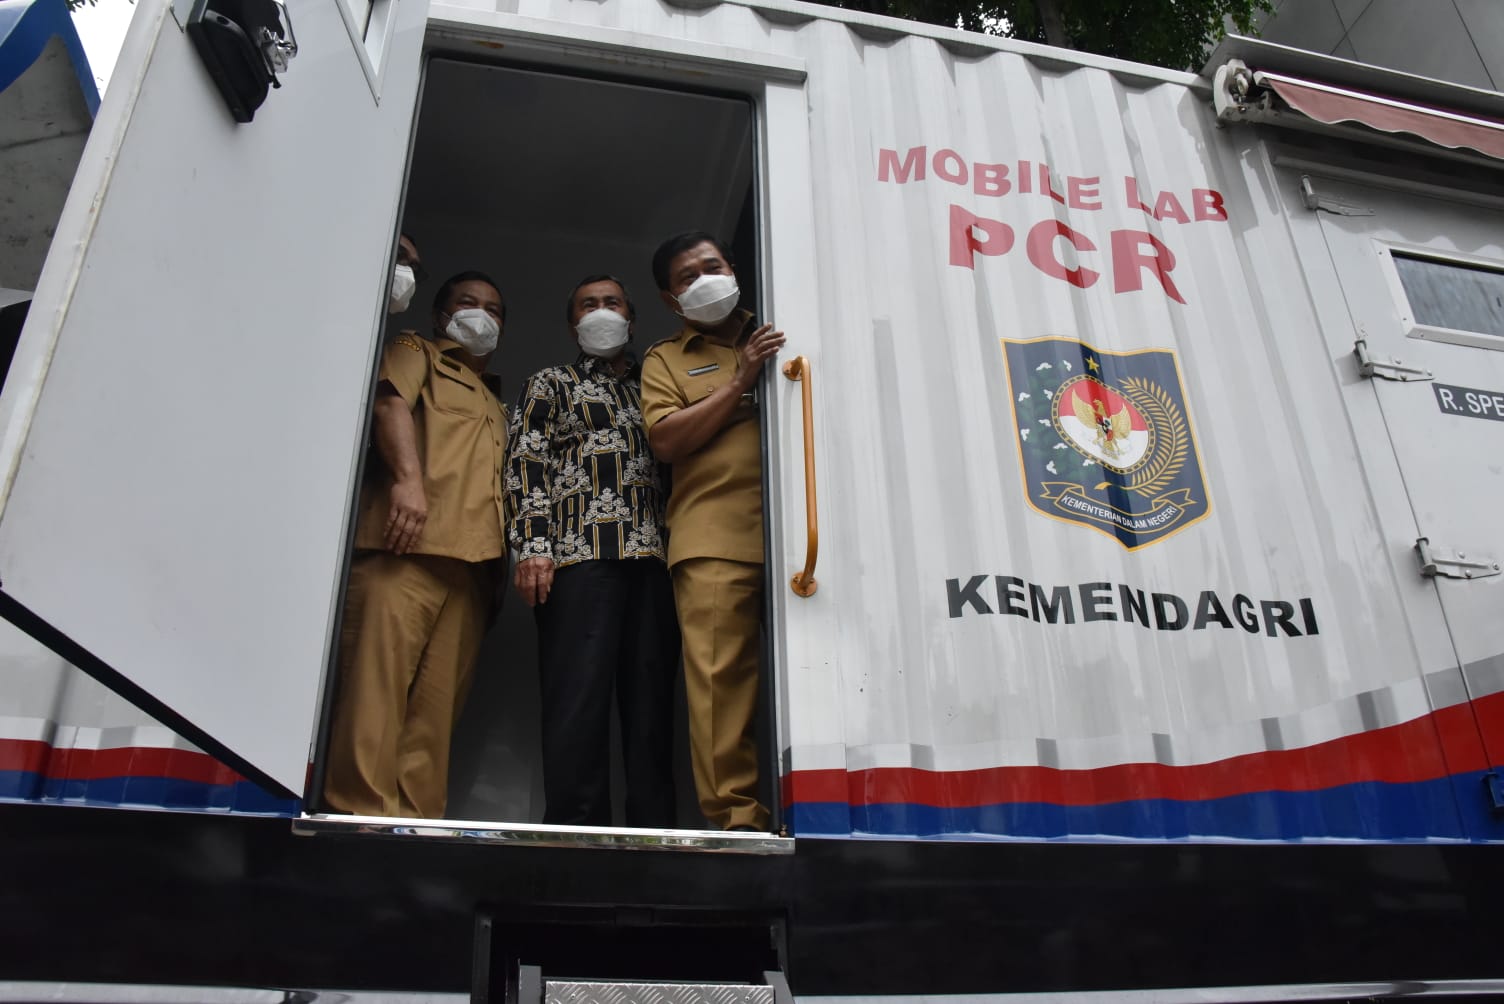 Riau Terima Hibah Mobil Lab PCR dari Kemendagri